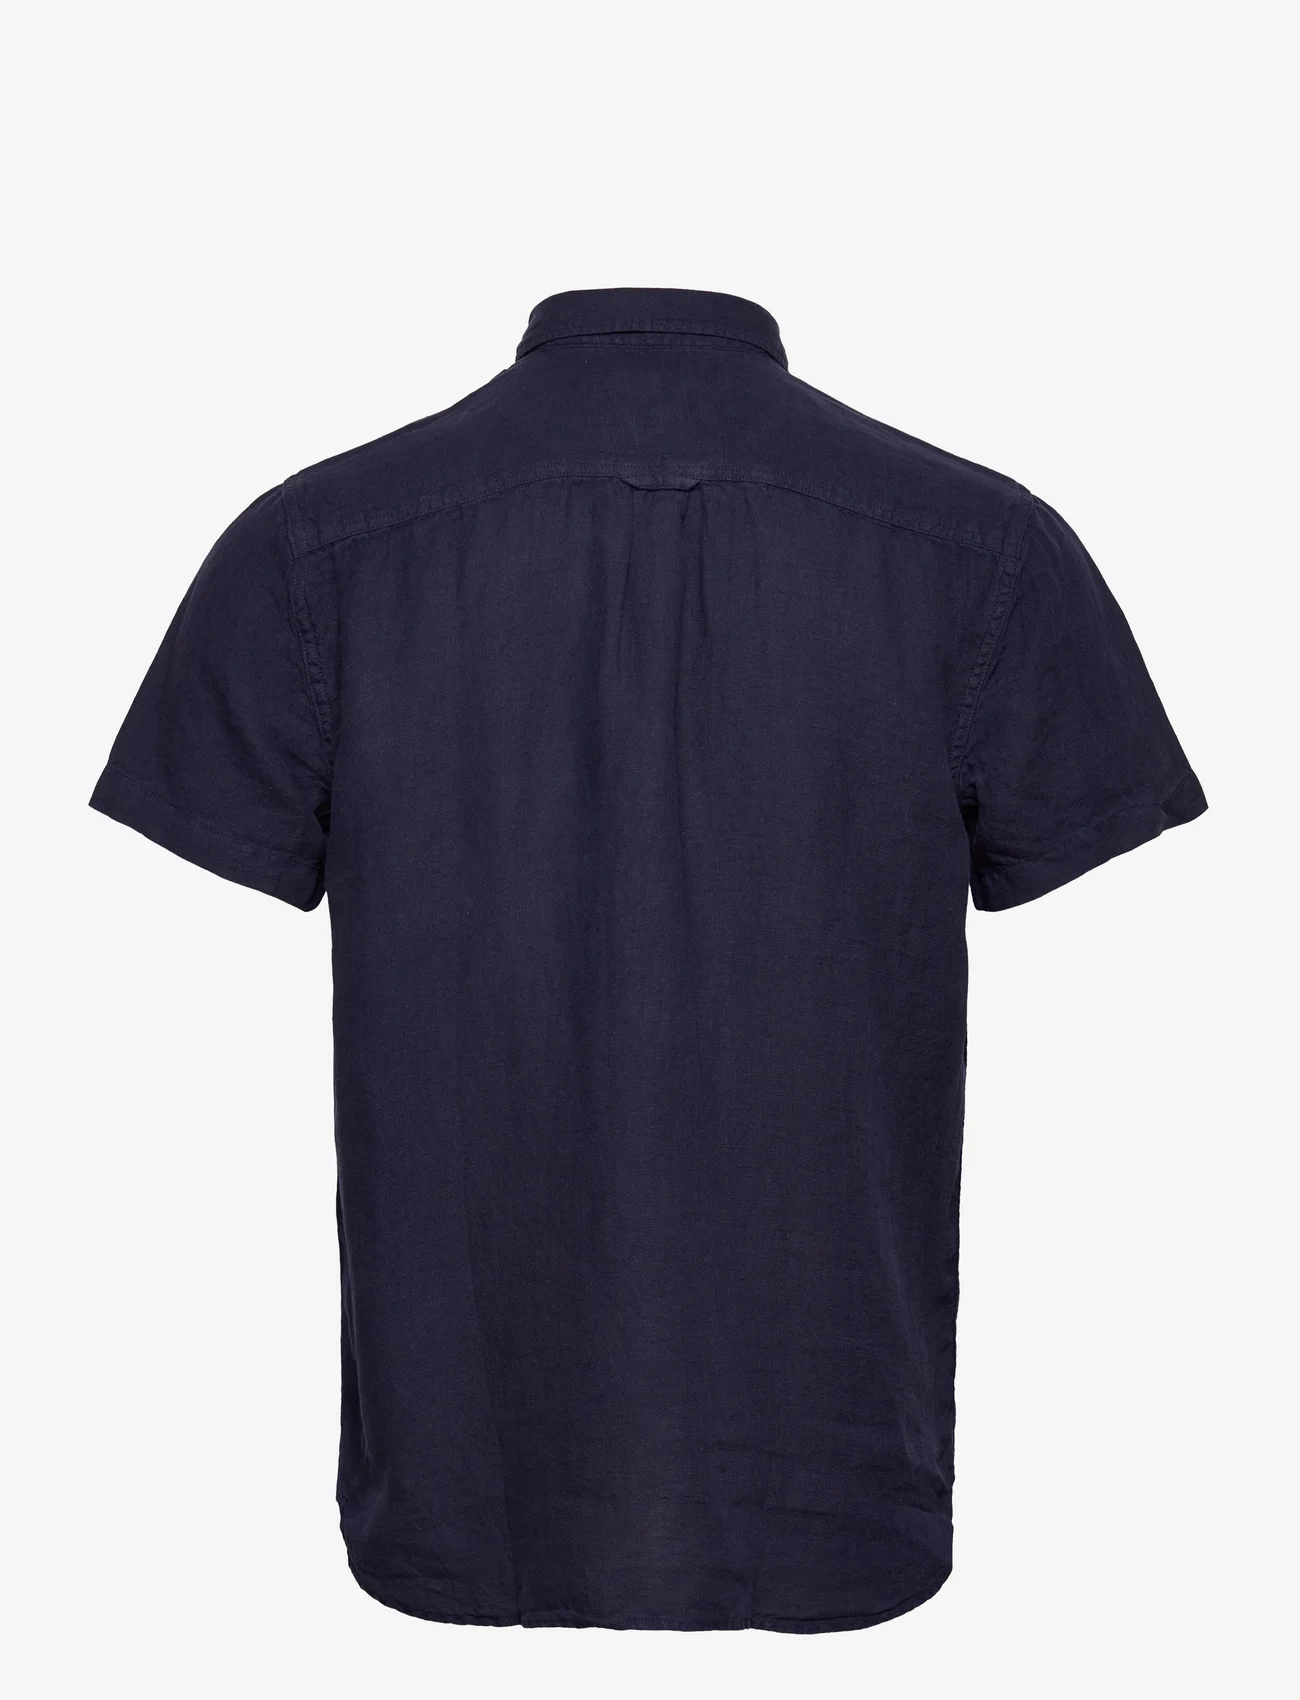 Sebago - Linen Shirt Short Sleeve - hørskjorter - navy - 1